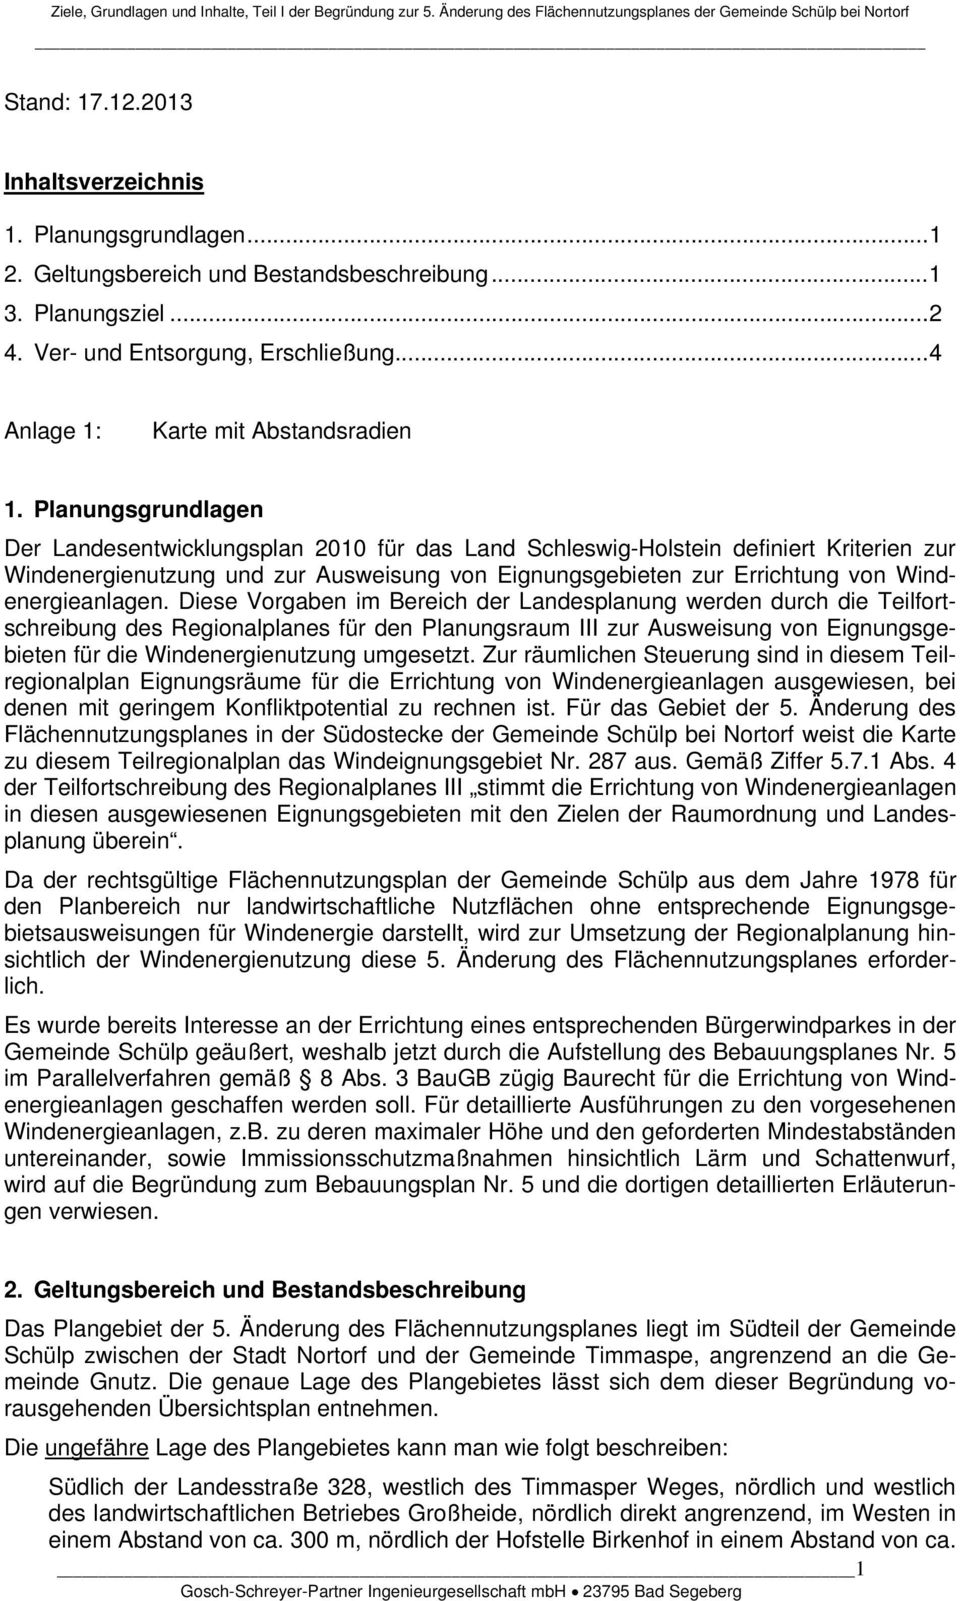 Planungsgrundlagen Der Landesentwicklungsplan 2010 für das Land Schleswig-Holstein definiert Kriterien zur Windenergienutzung und zur Ausweisung von Eignungsgebieten zur Errichtung von